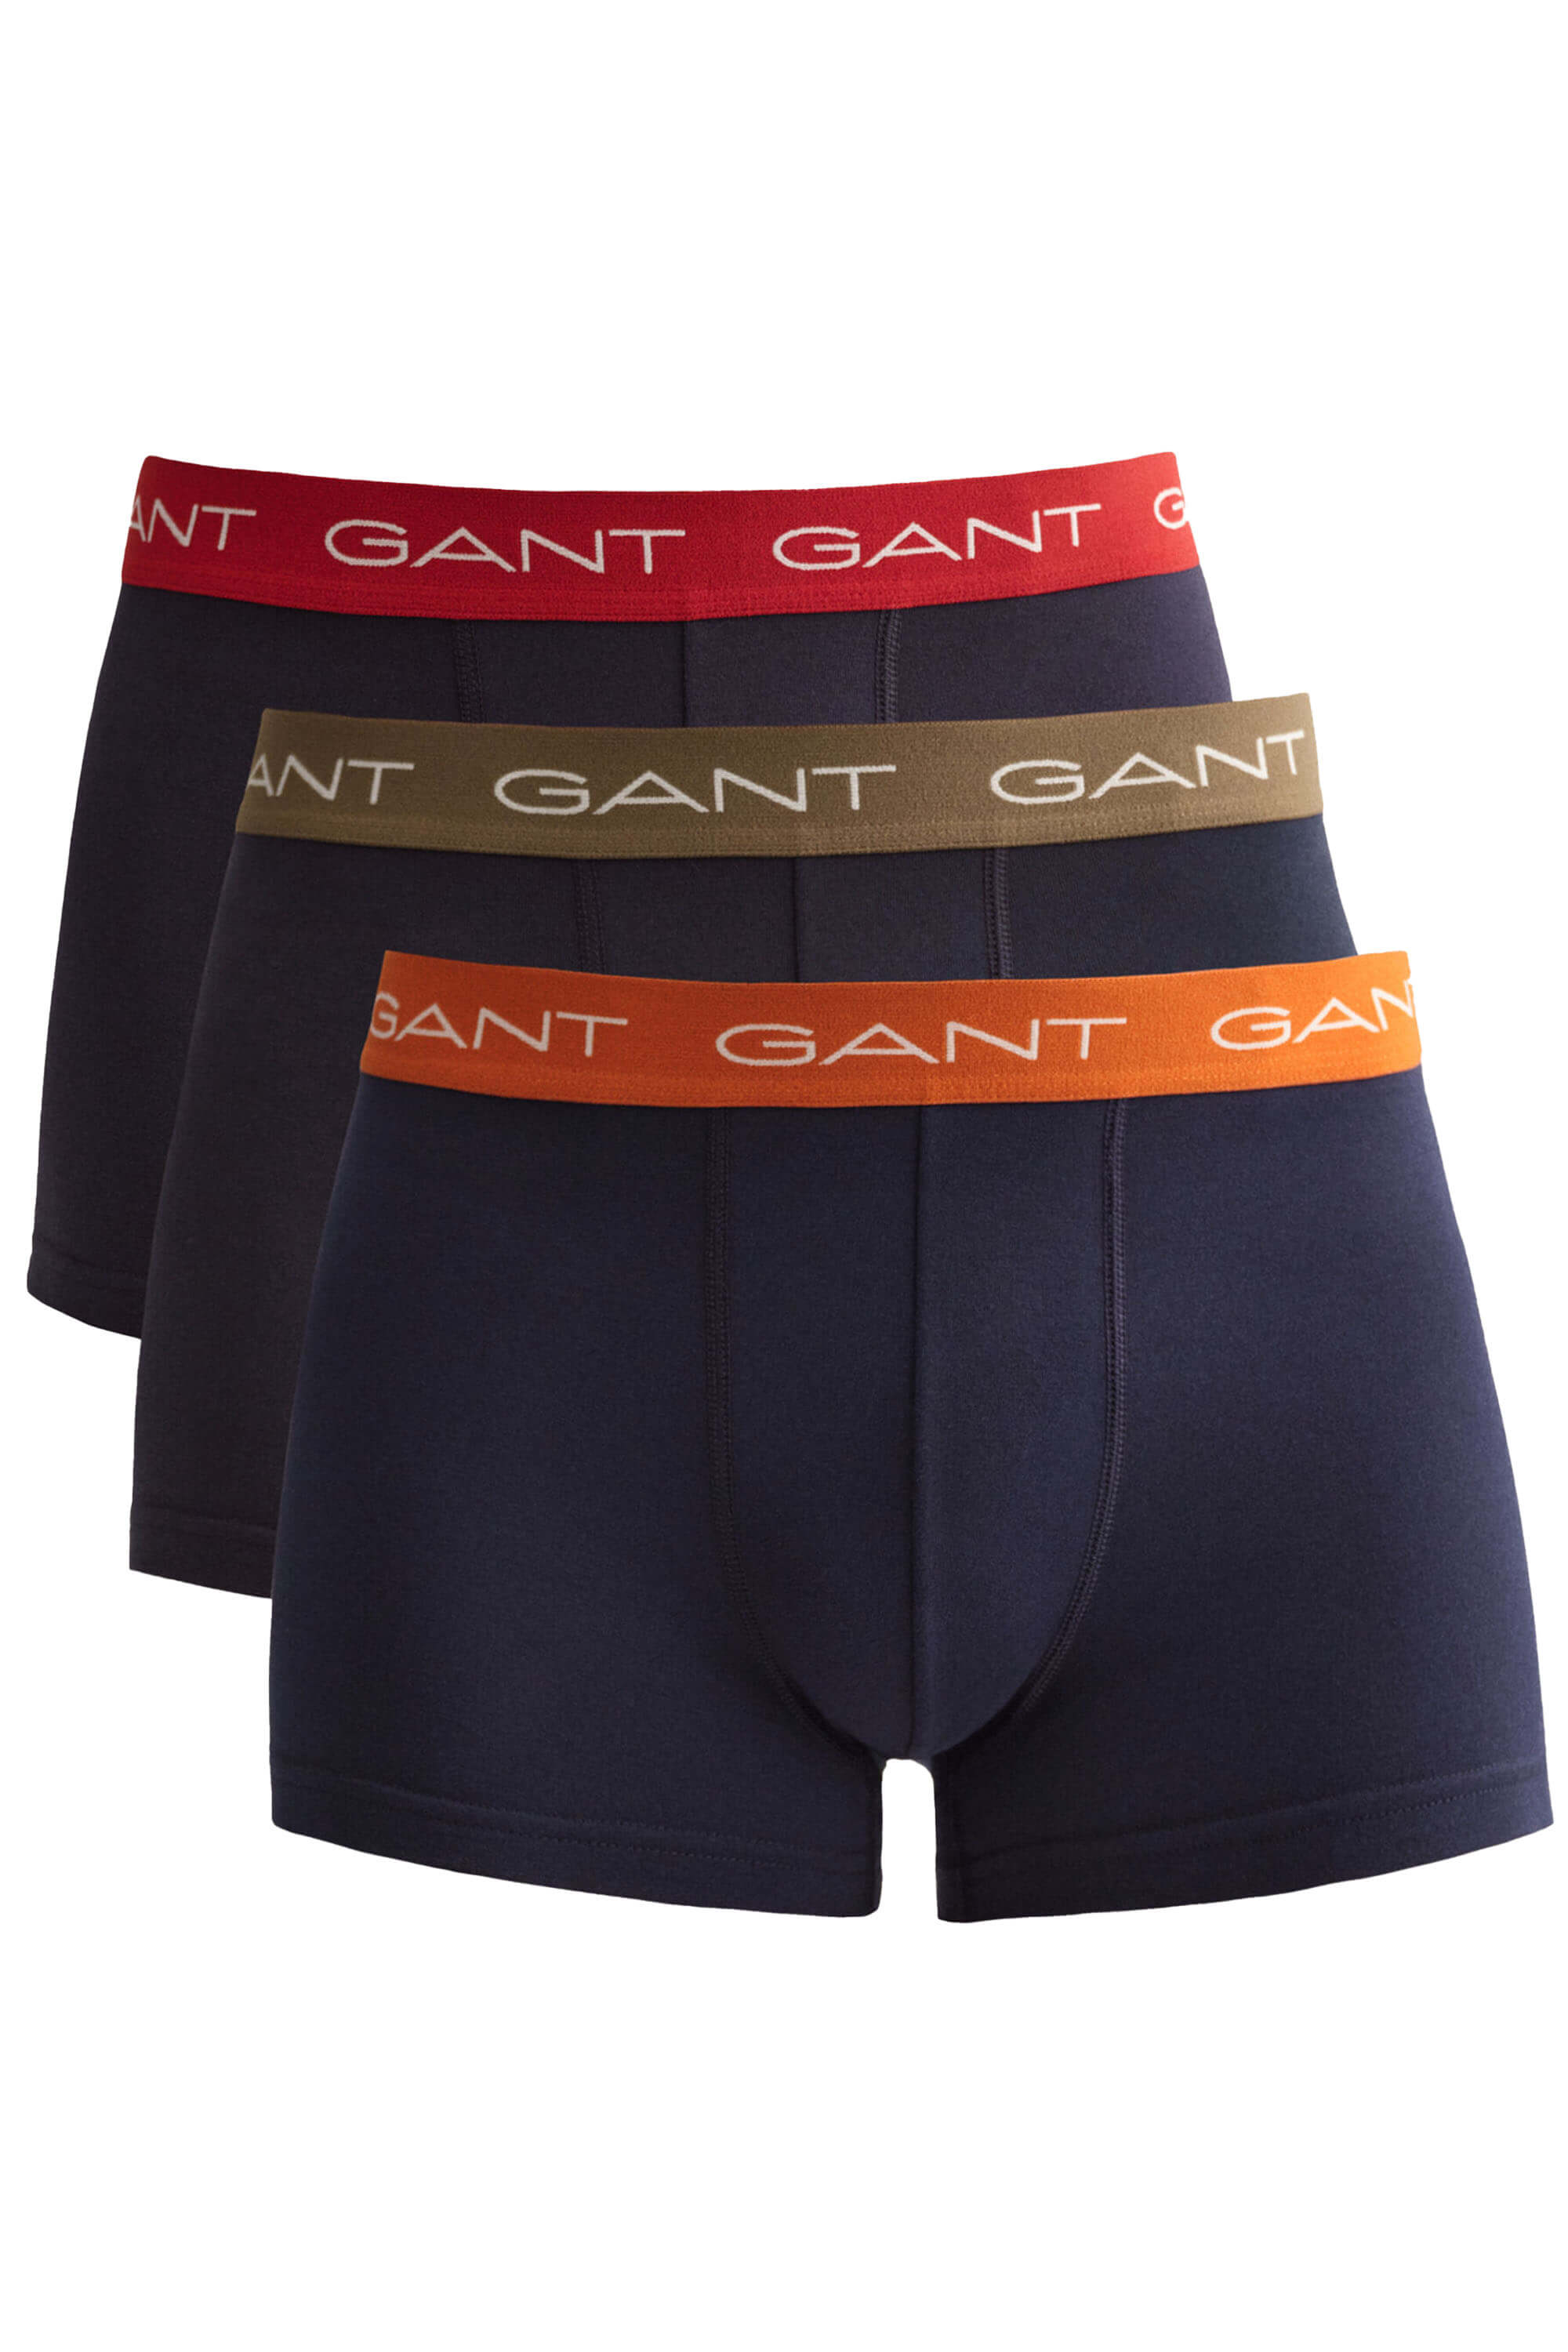 Gant 3-Pack Trunks